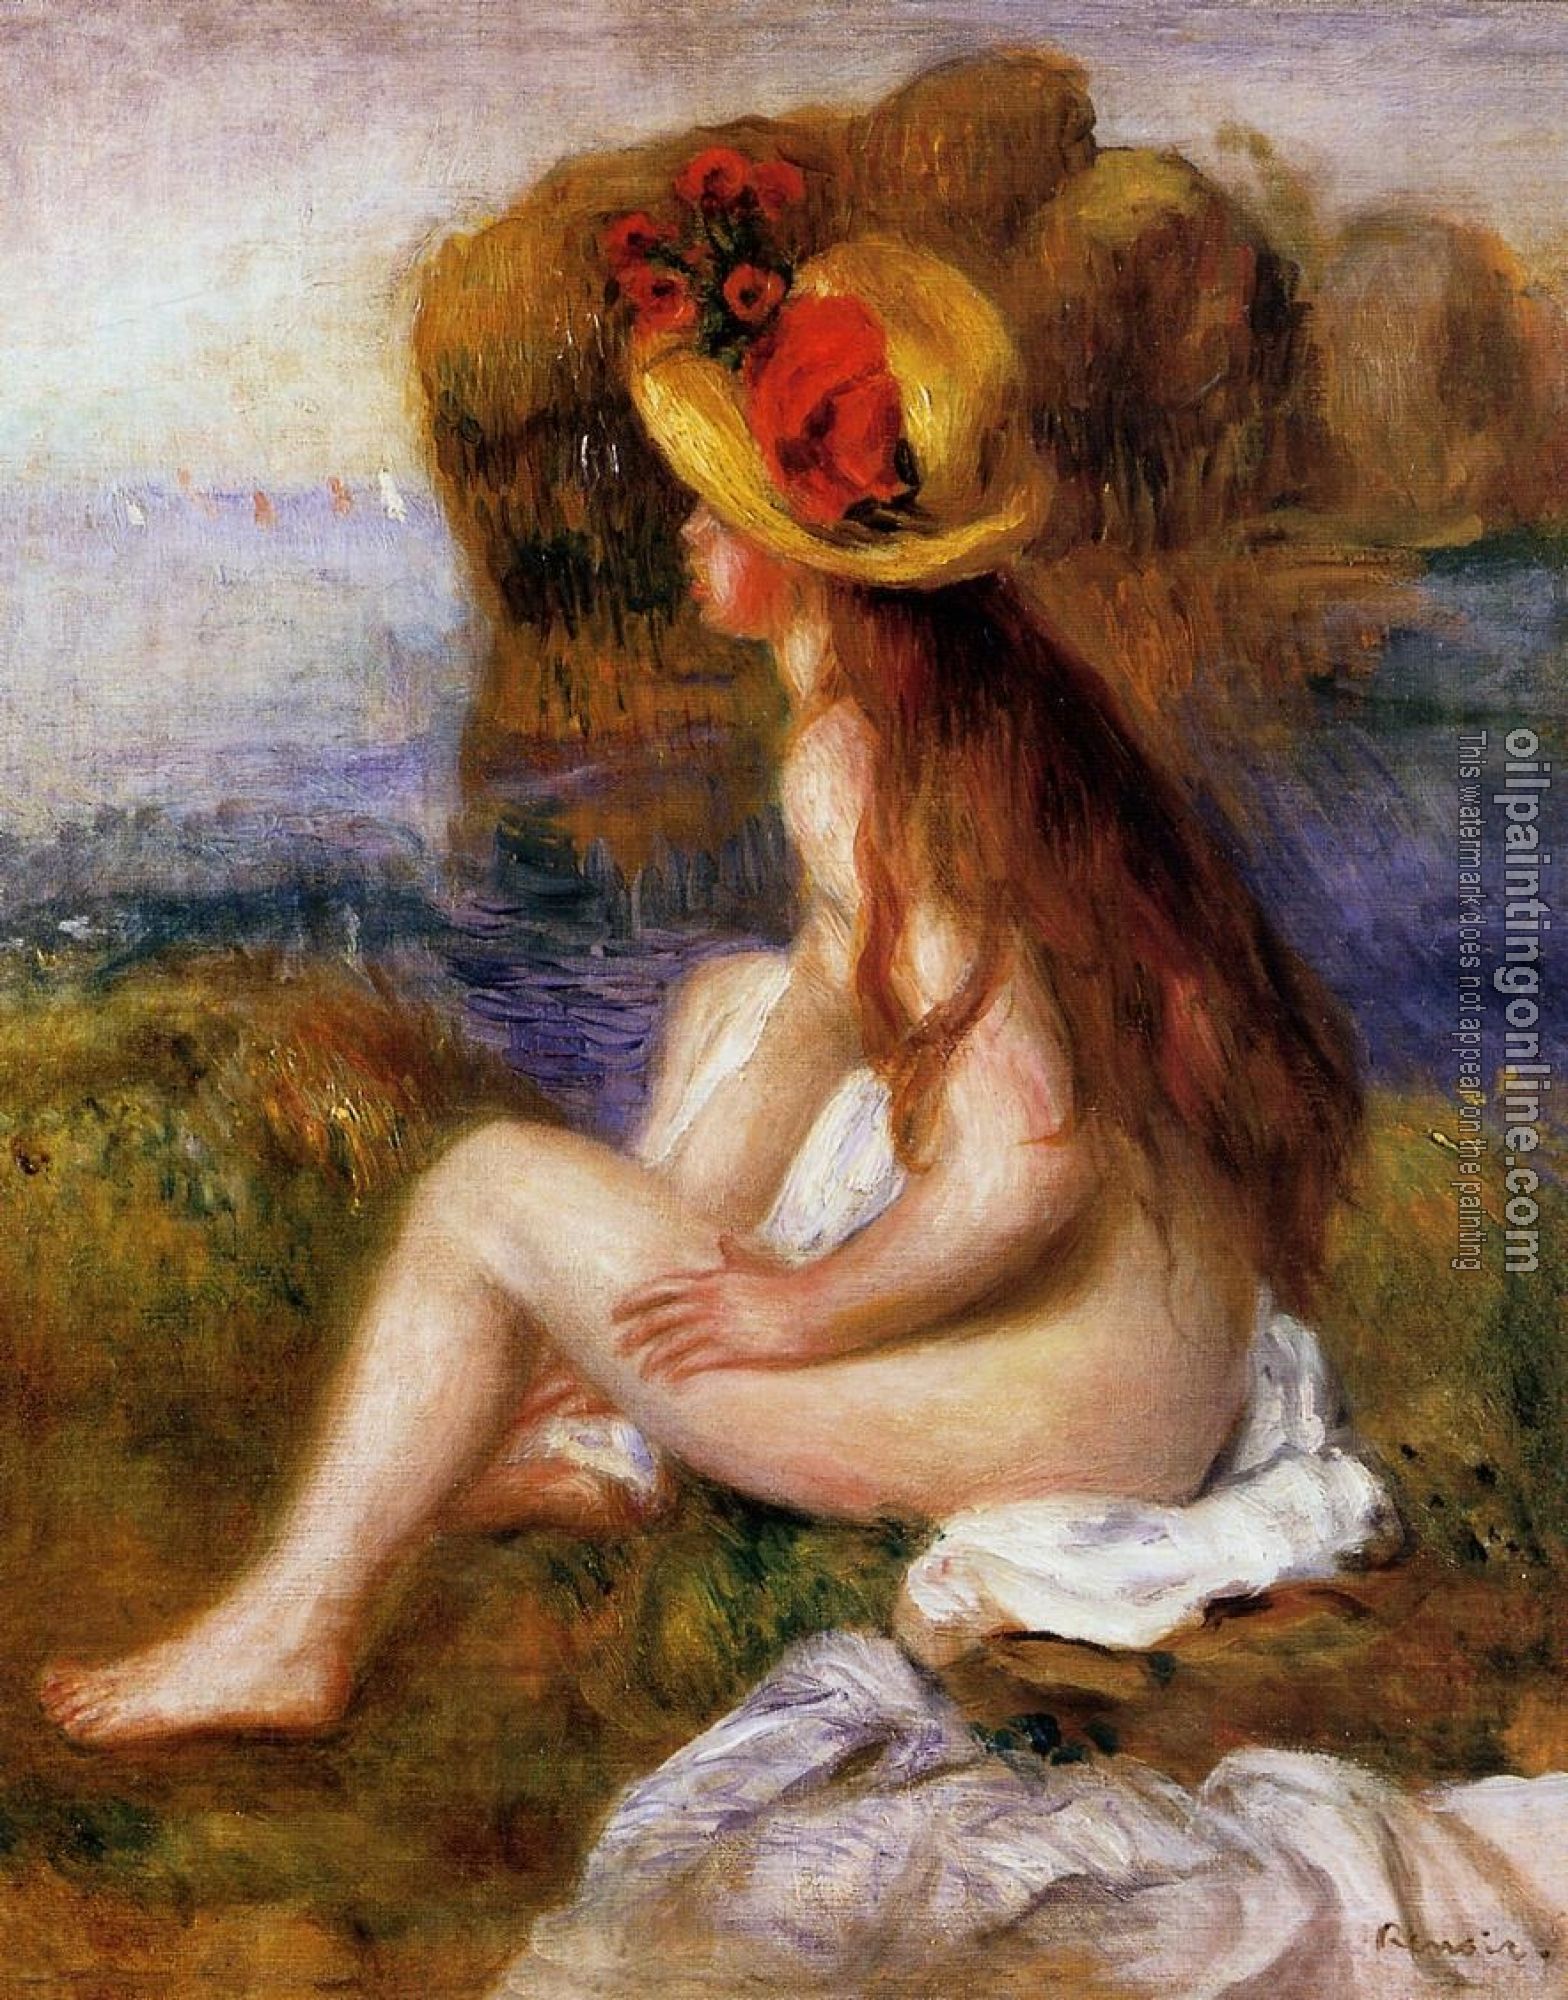 Renoir, Pierre Auguste - Nude in a Straw Hat